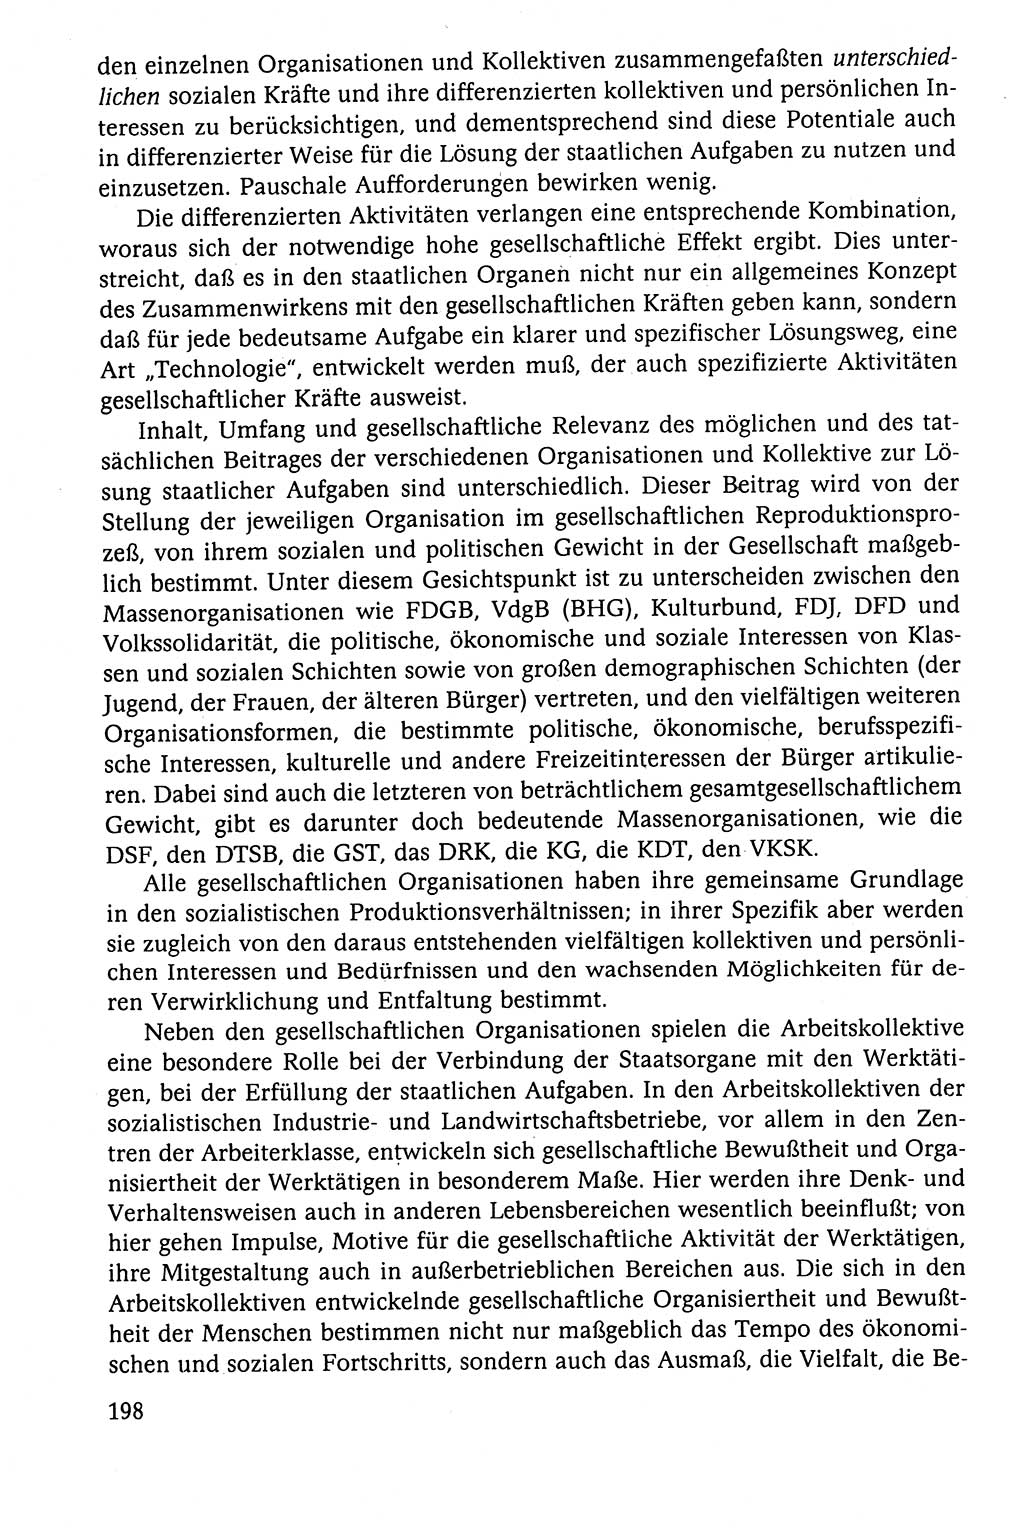 Der Staat im politischen System der DDR (Deutsche Demokratische Republik) 1986, Seite 198 (St. pol. Sys. DDR 1986, S. 198)